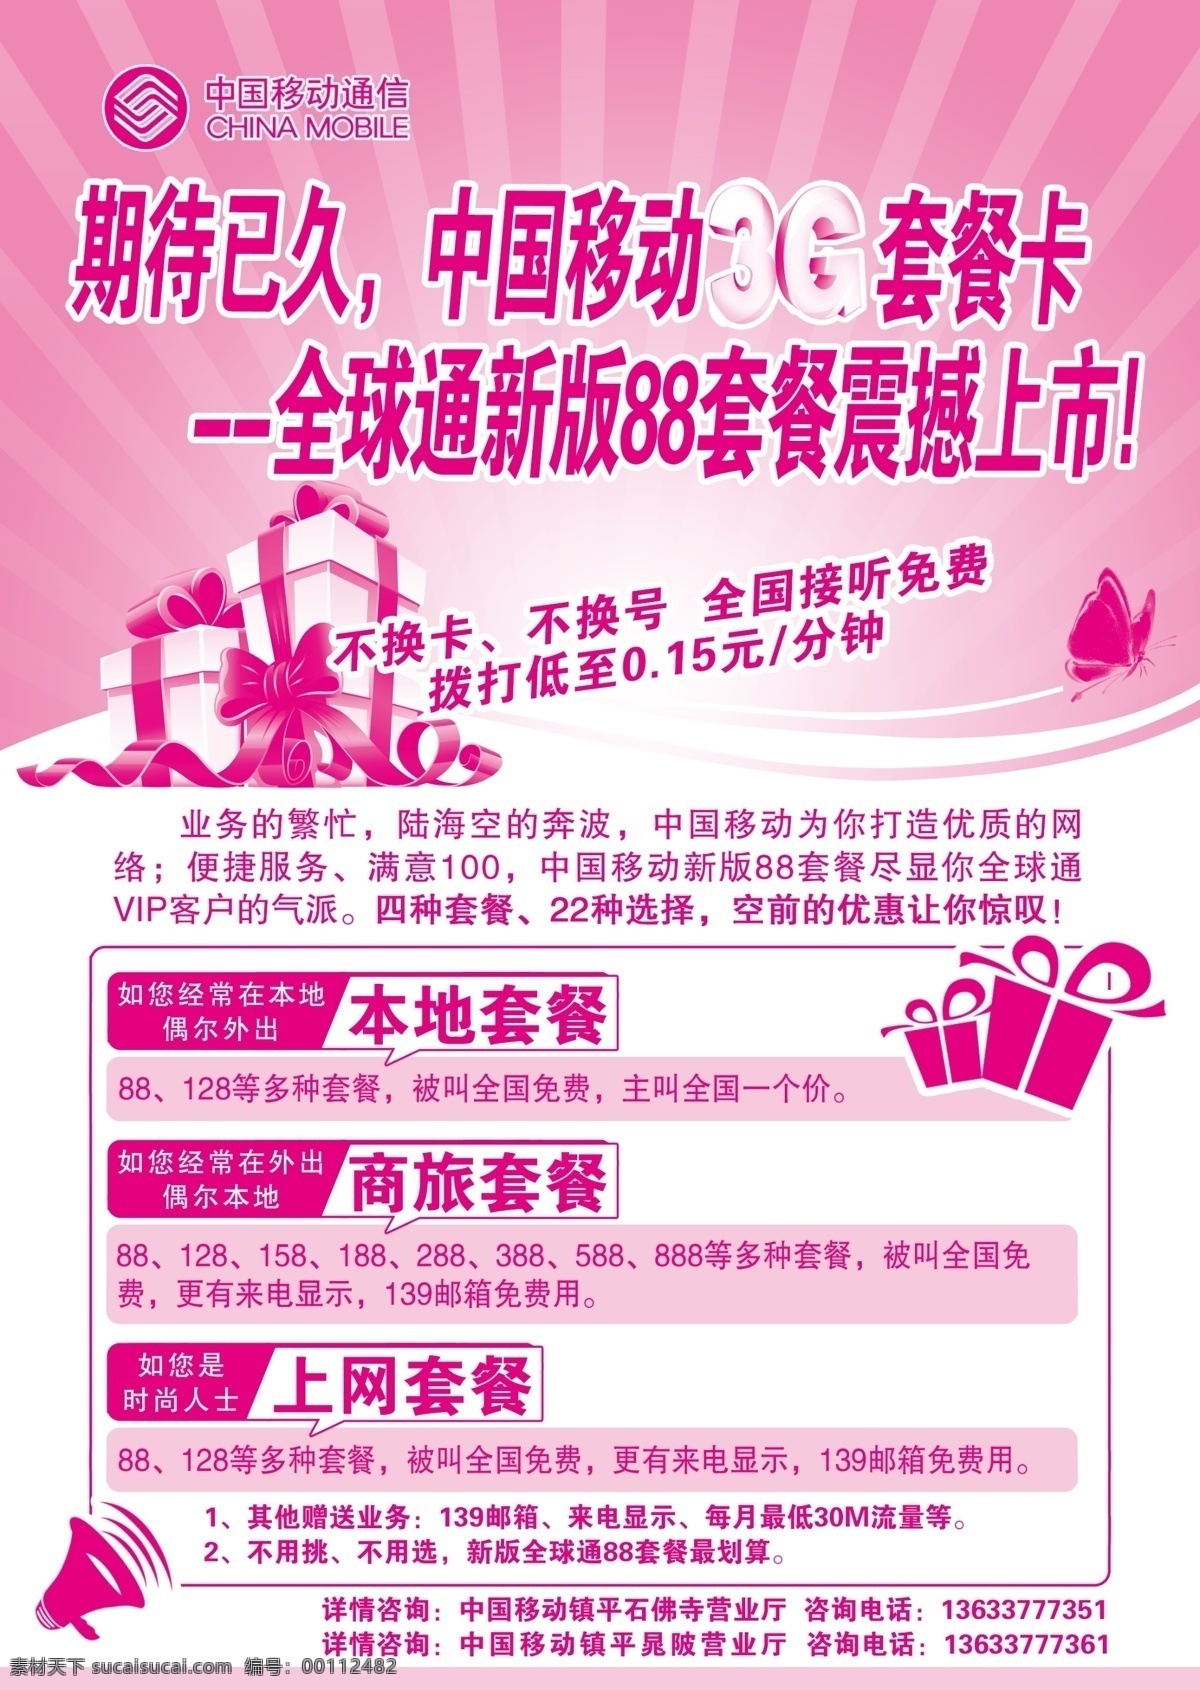 3g 广告设计模板 礼包 宣传海报 移动 源文件 震撼上市 中国移动 88套餐 psd源文件 餐饮素材